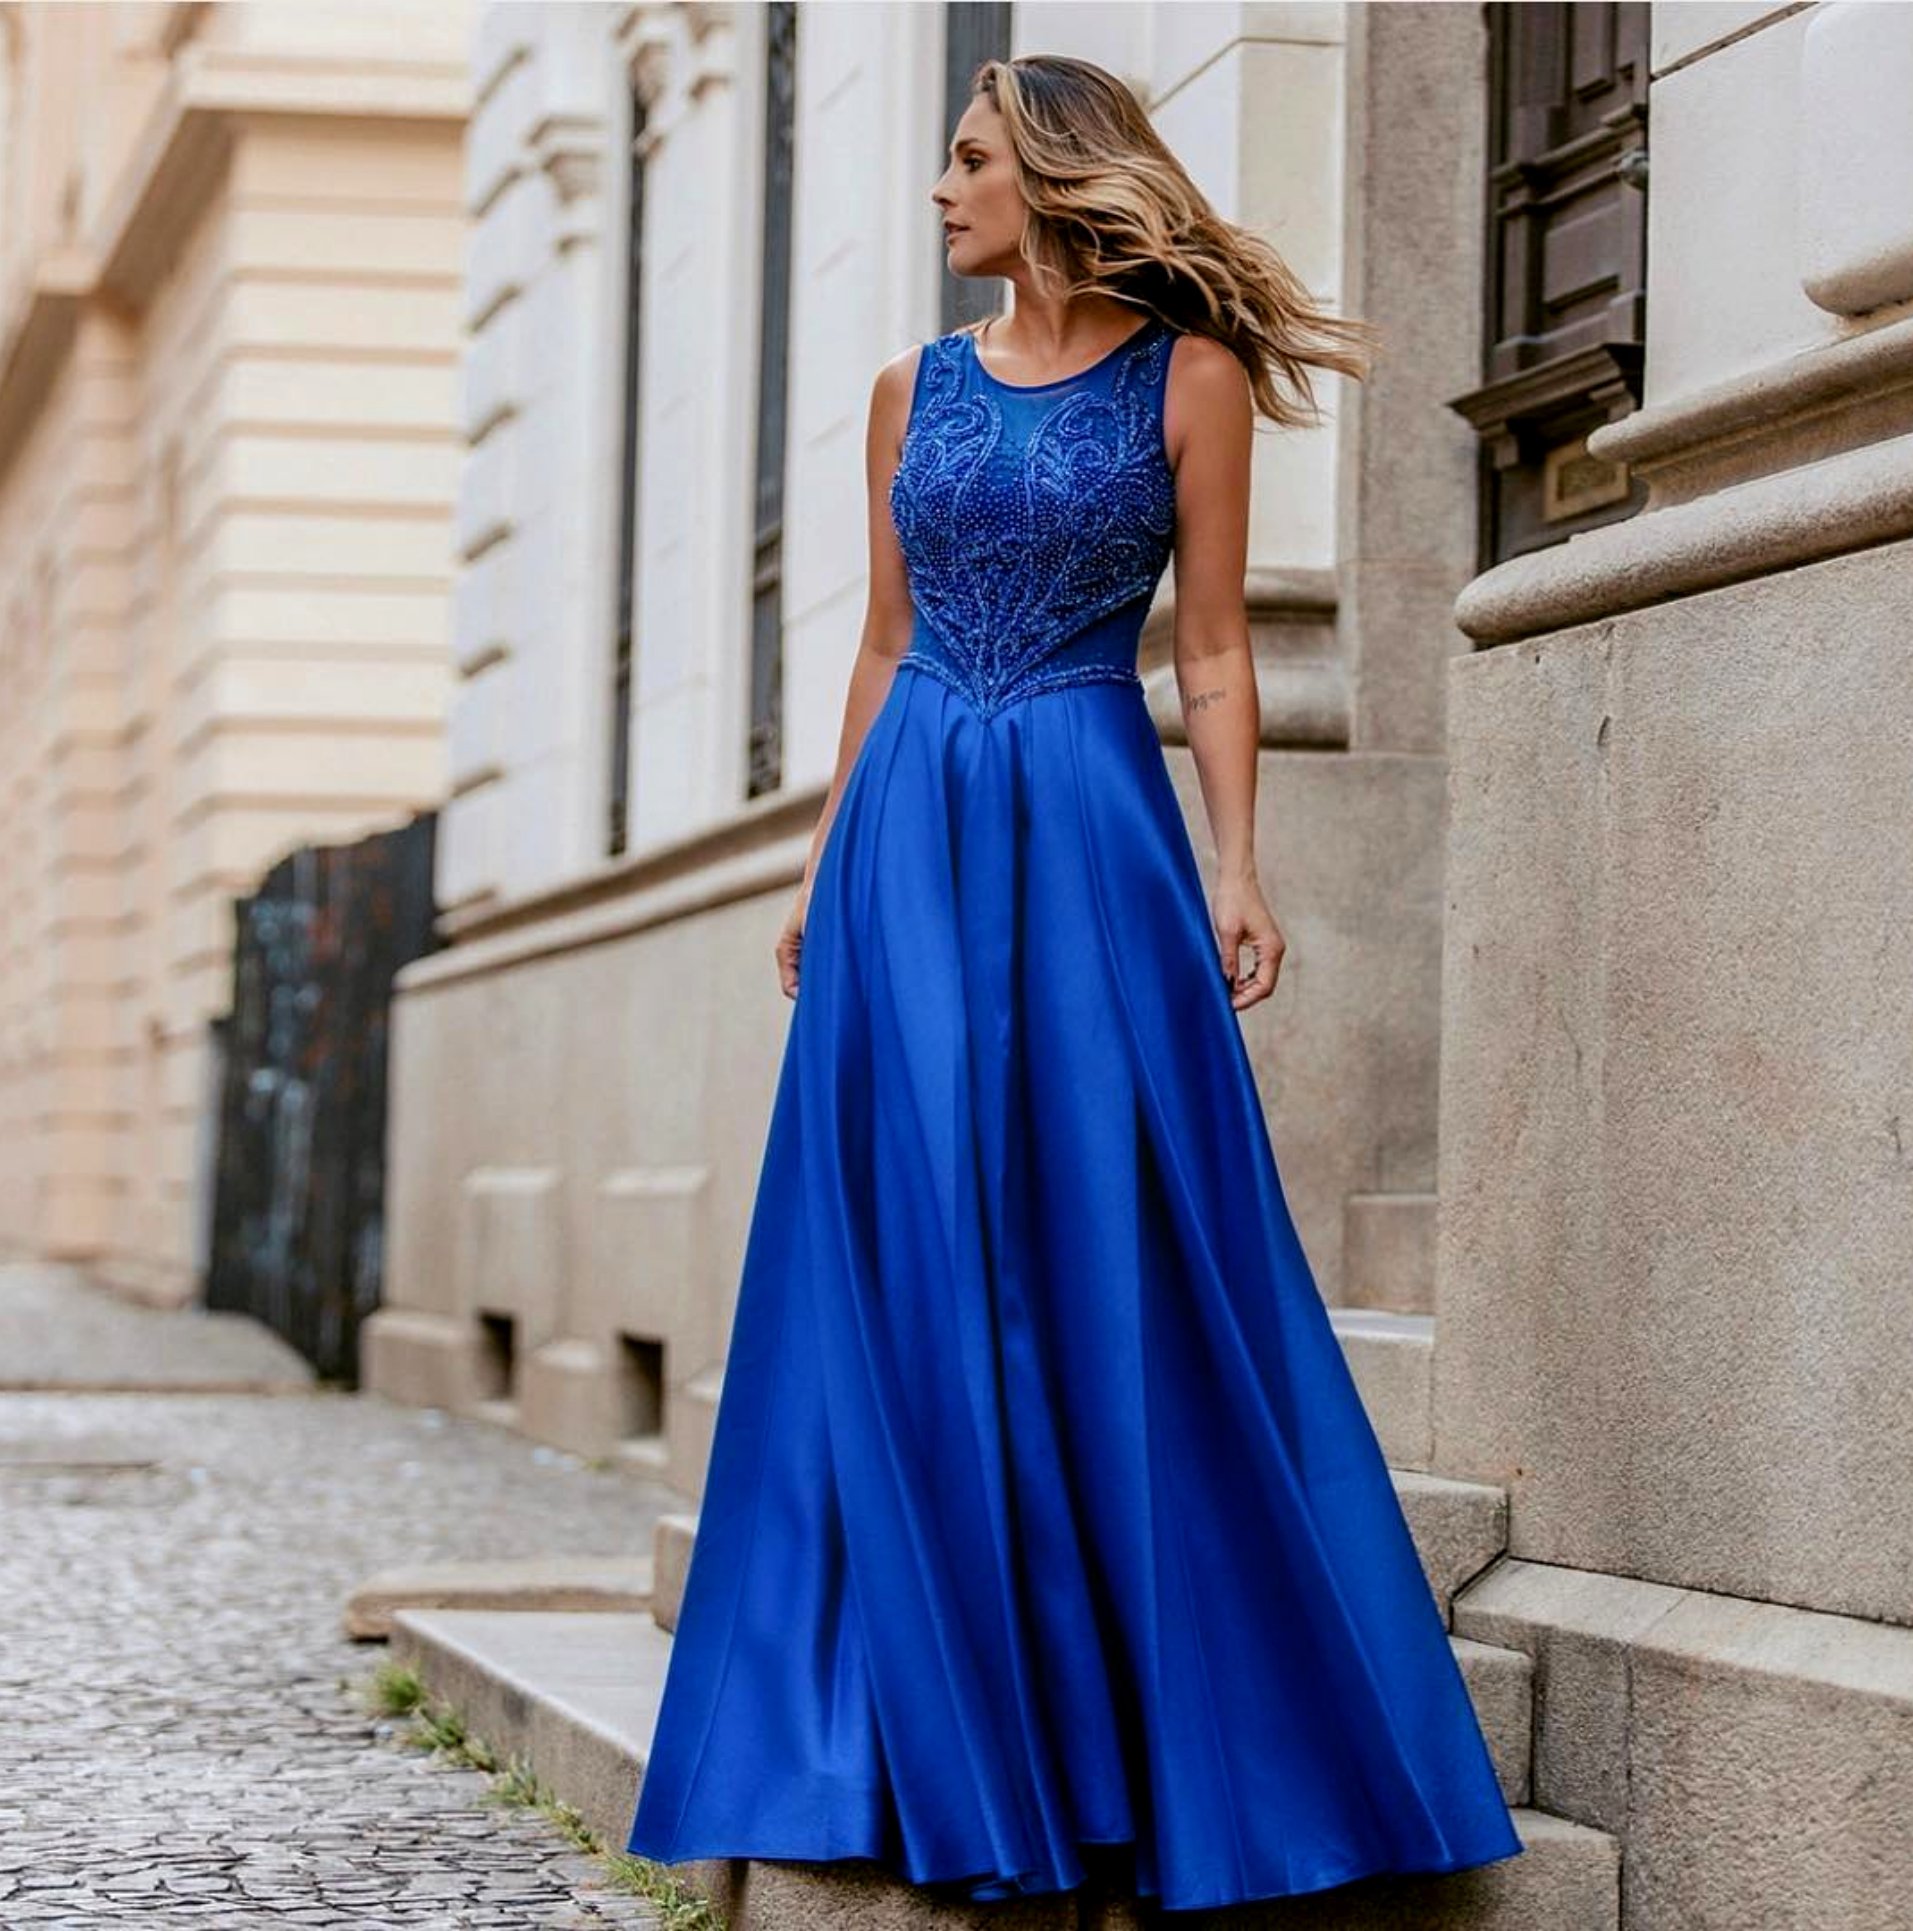 y vestidos azul royal para tu